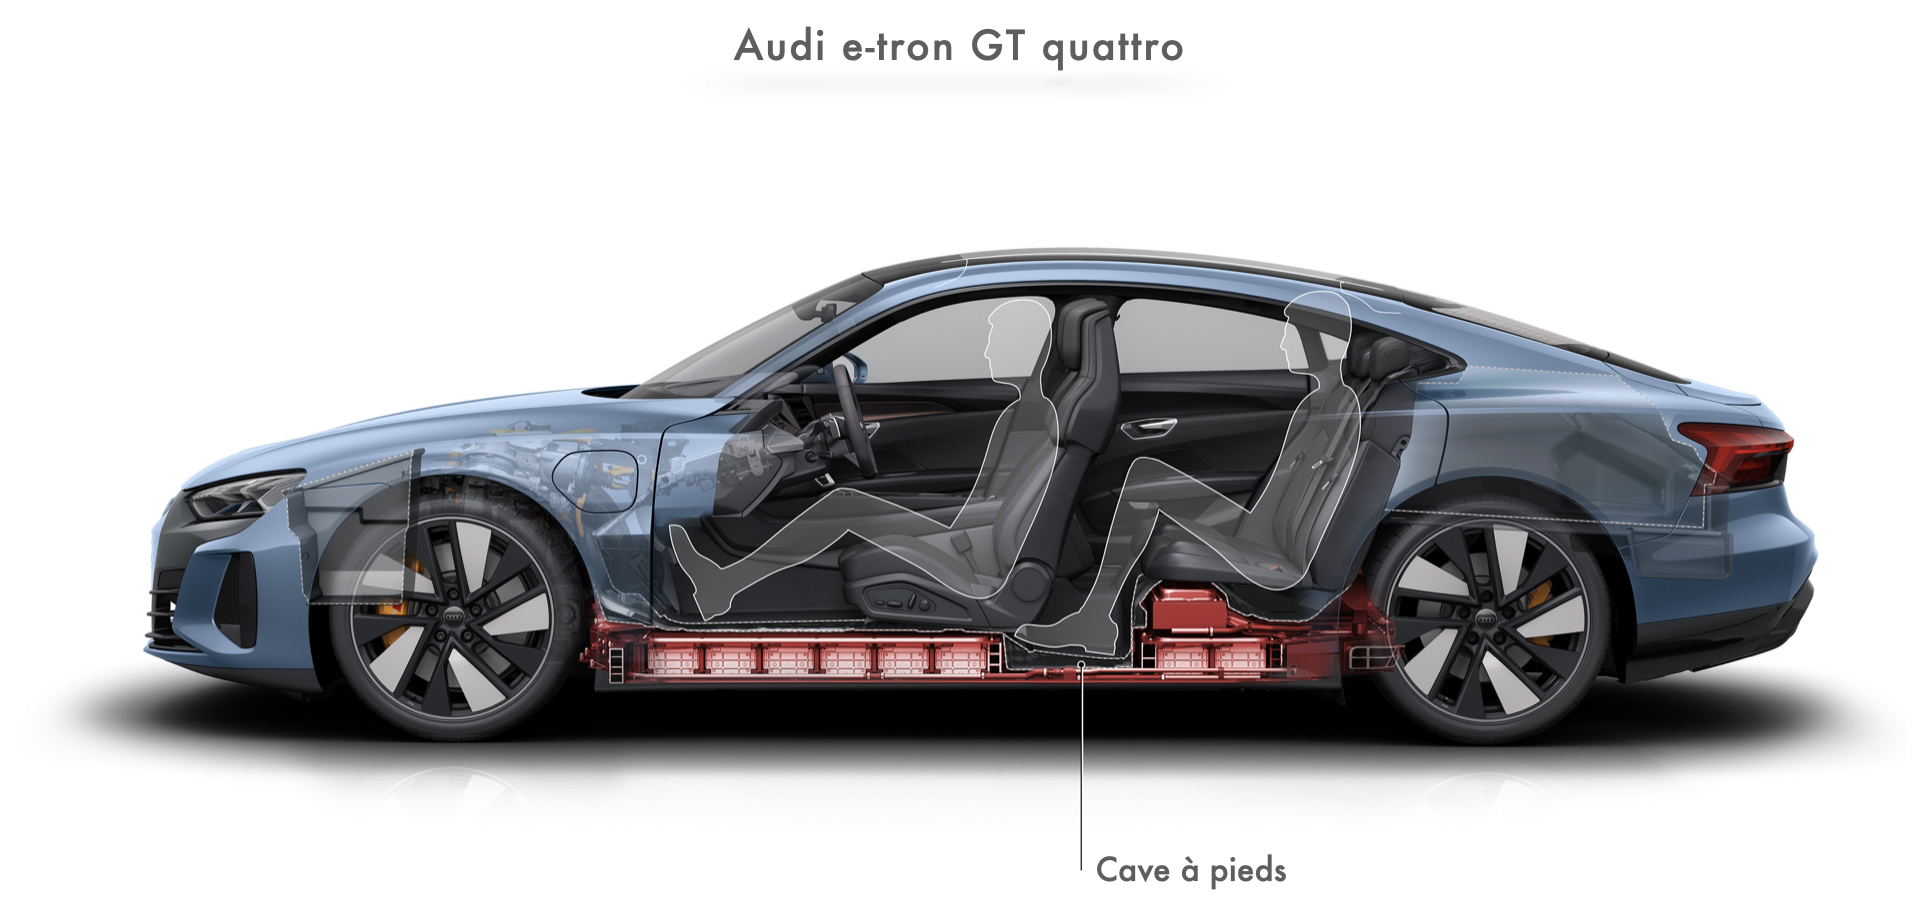 Emplacement de la batterie - dégagement pour les pieds des passagers arrière - Audi e-tron GT quattro